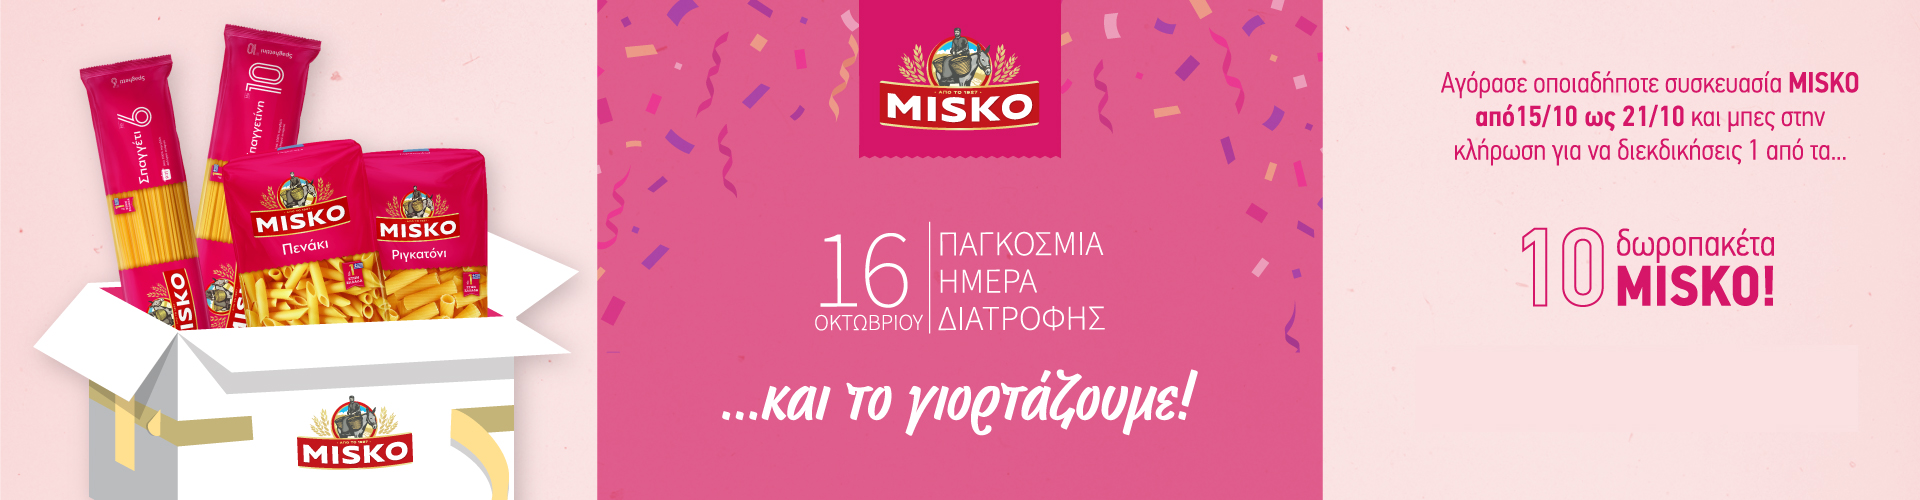 Με την αγορά ενός από τα παρακάτω προϊόντα μπείτε σε κλήρωση για 10 Δωροπακέτα Misko